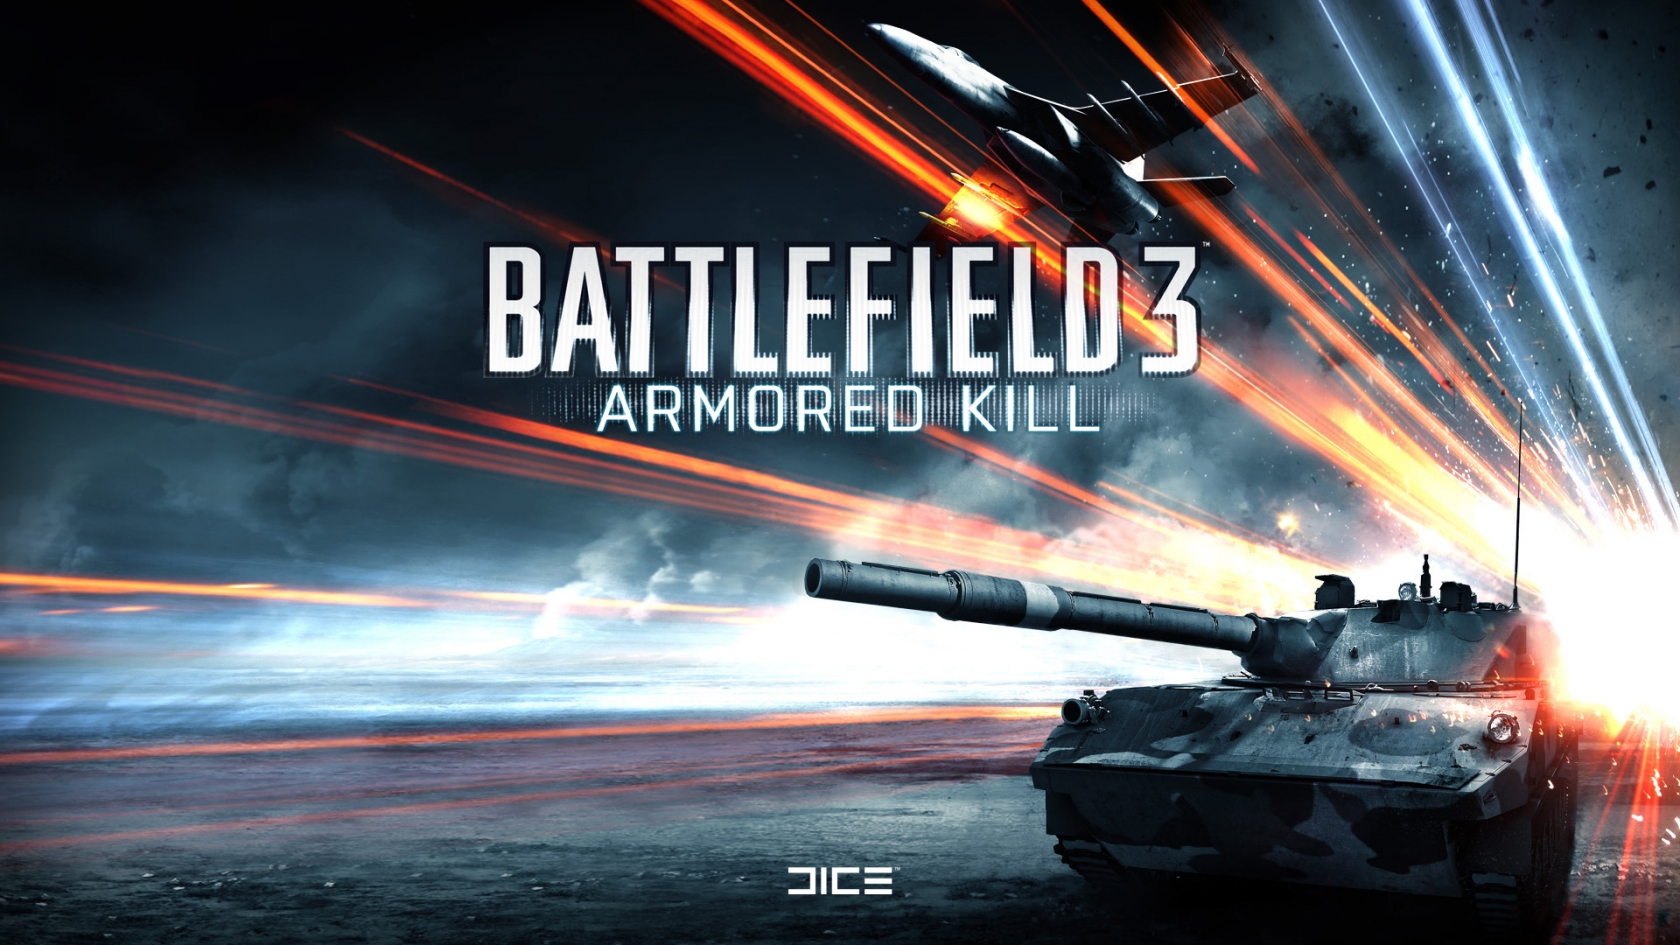 Battlefield 3 Armored Kill for 1680 x 945 HDTV resolution